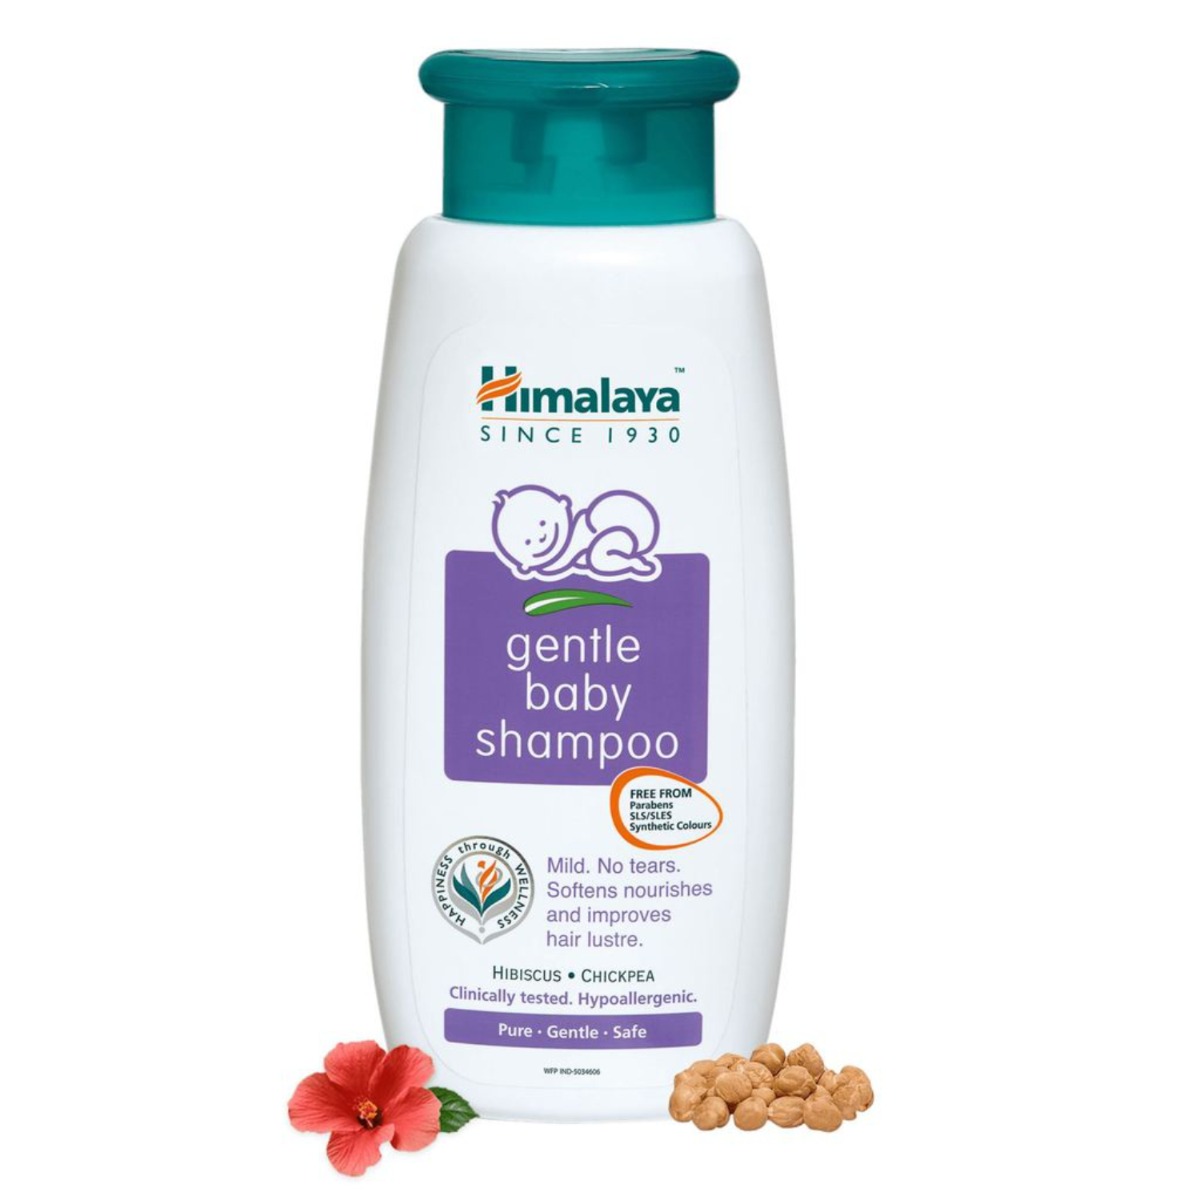 Himalaya Baby gentle shampoo, 100ml